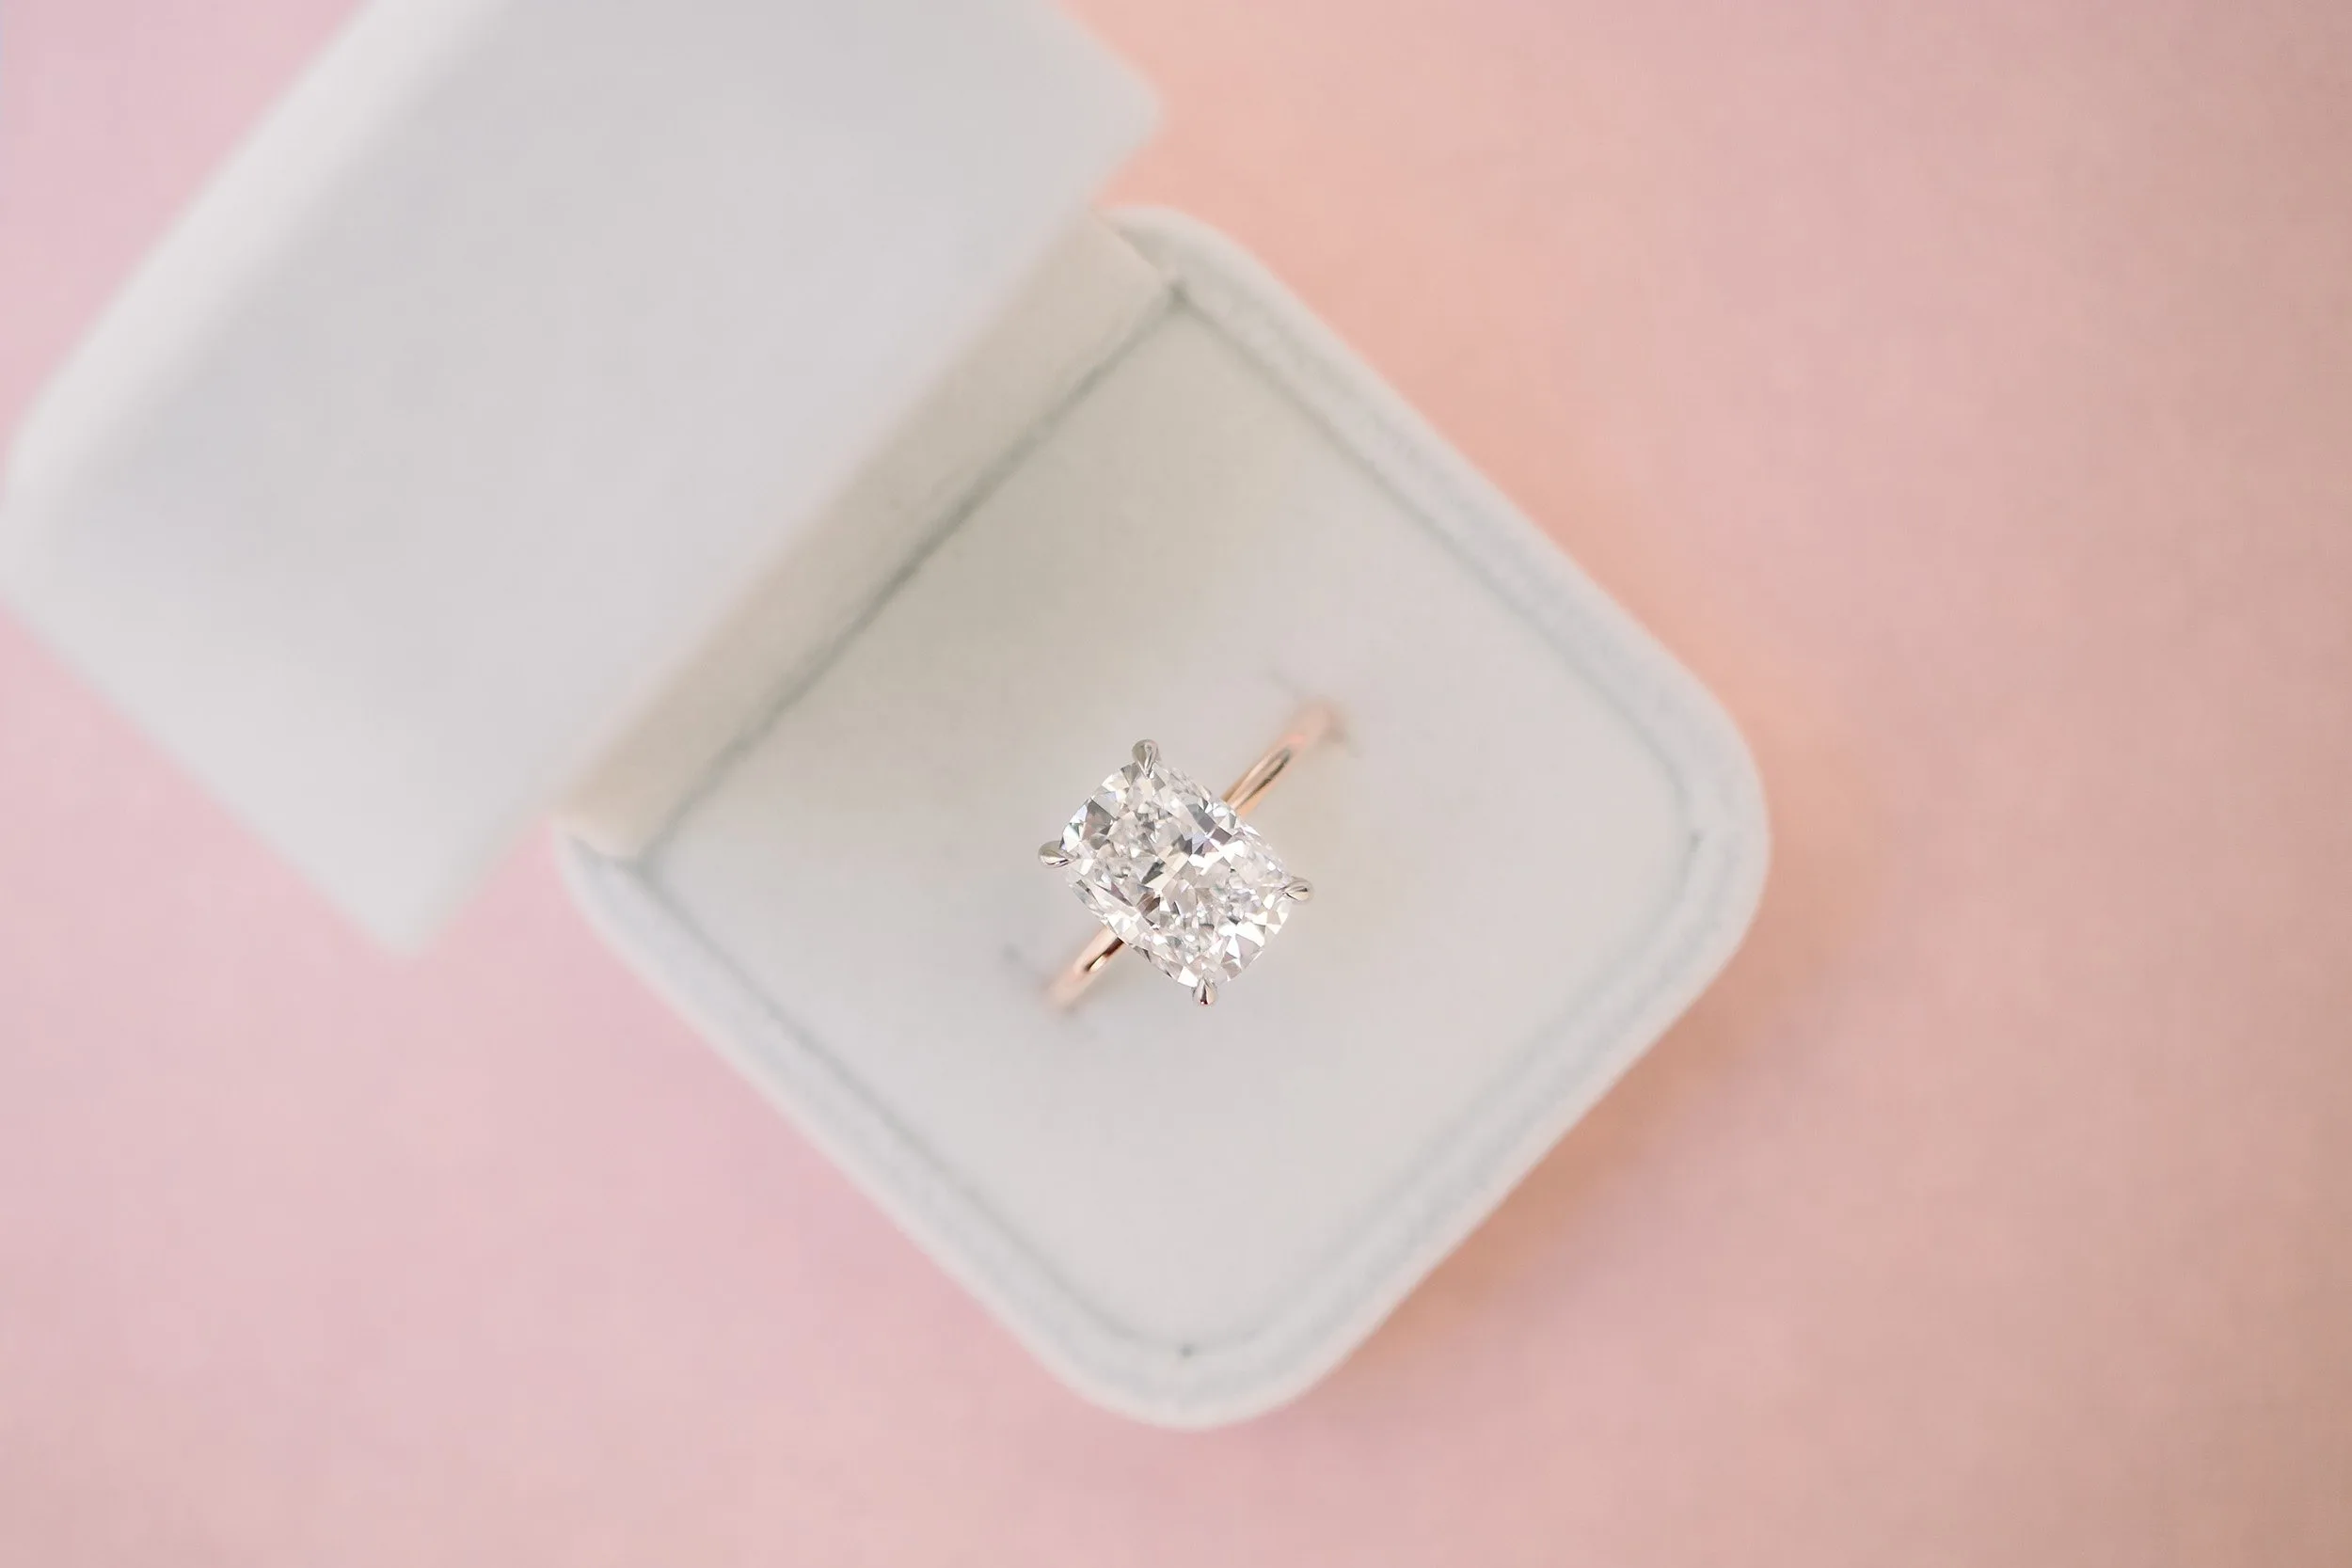 5-Carat Diamond Ring : r/EngagementRings